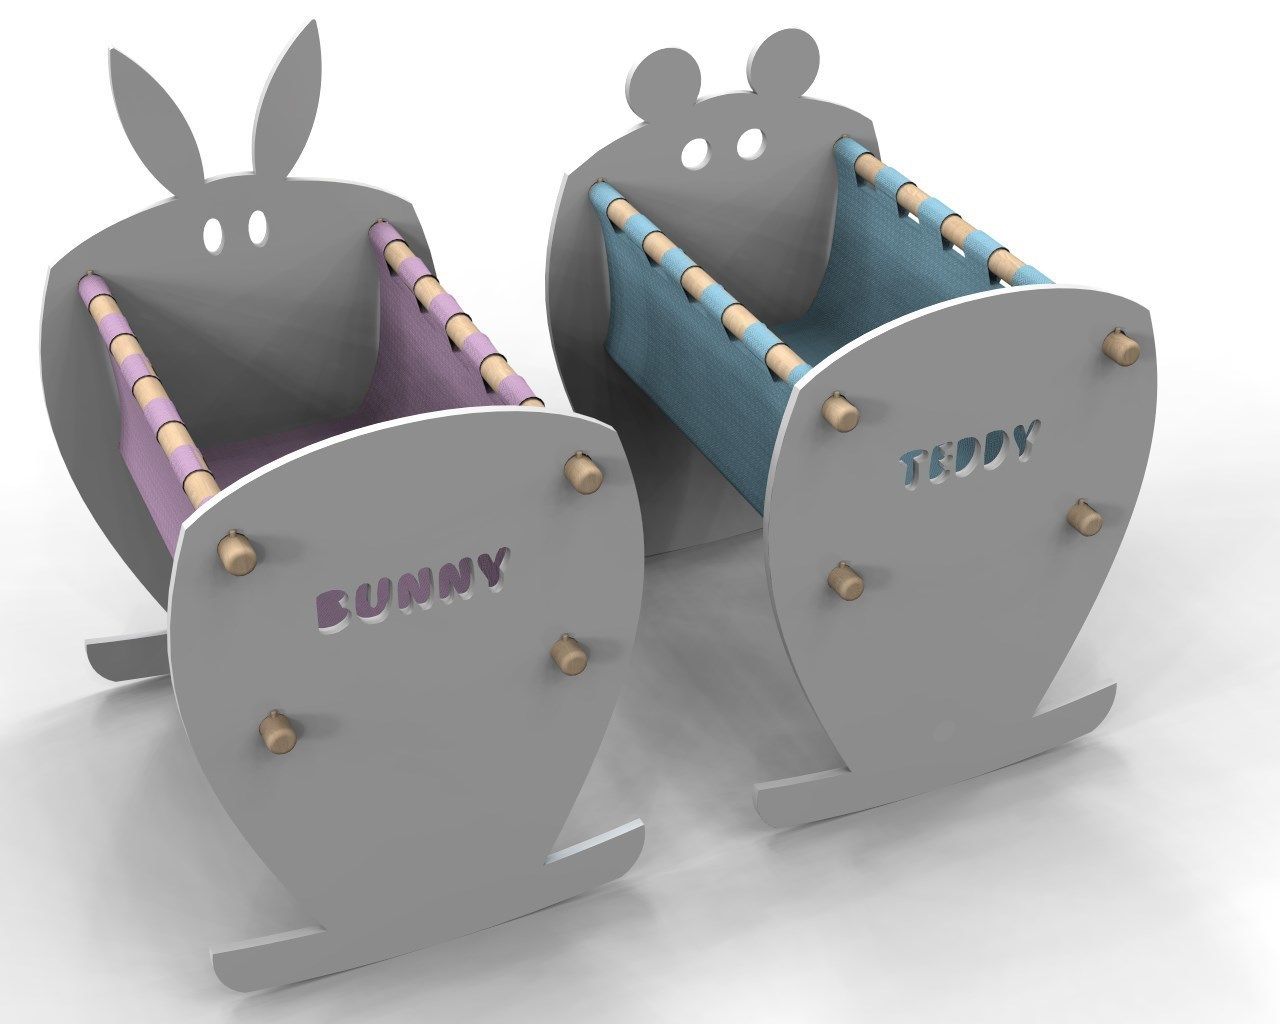 Teddy&Bunny, Nyda Design - Nicola D'Alessandro architetto Nyda Design - Nicola D'Alessandro architetto Modern Çocuk Odası Yatak & Beşikler